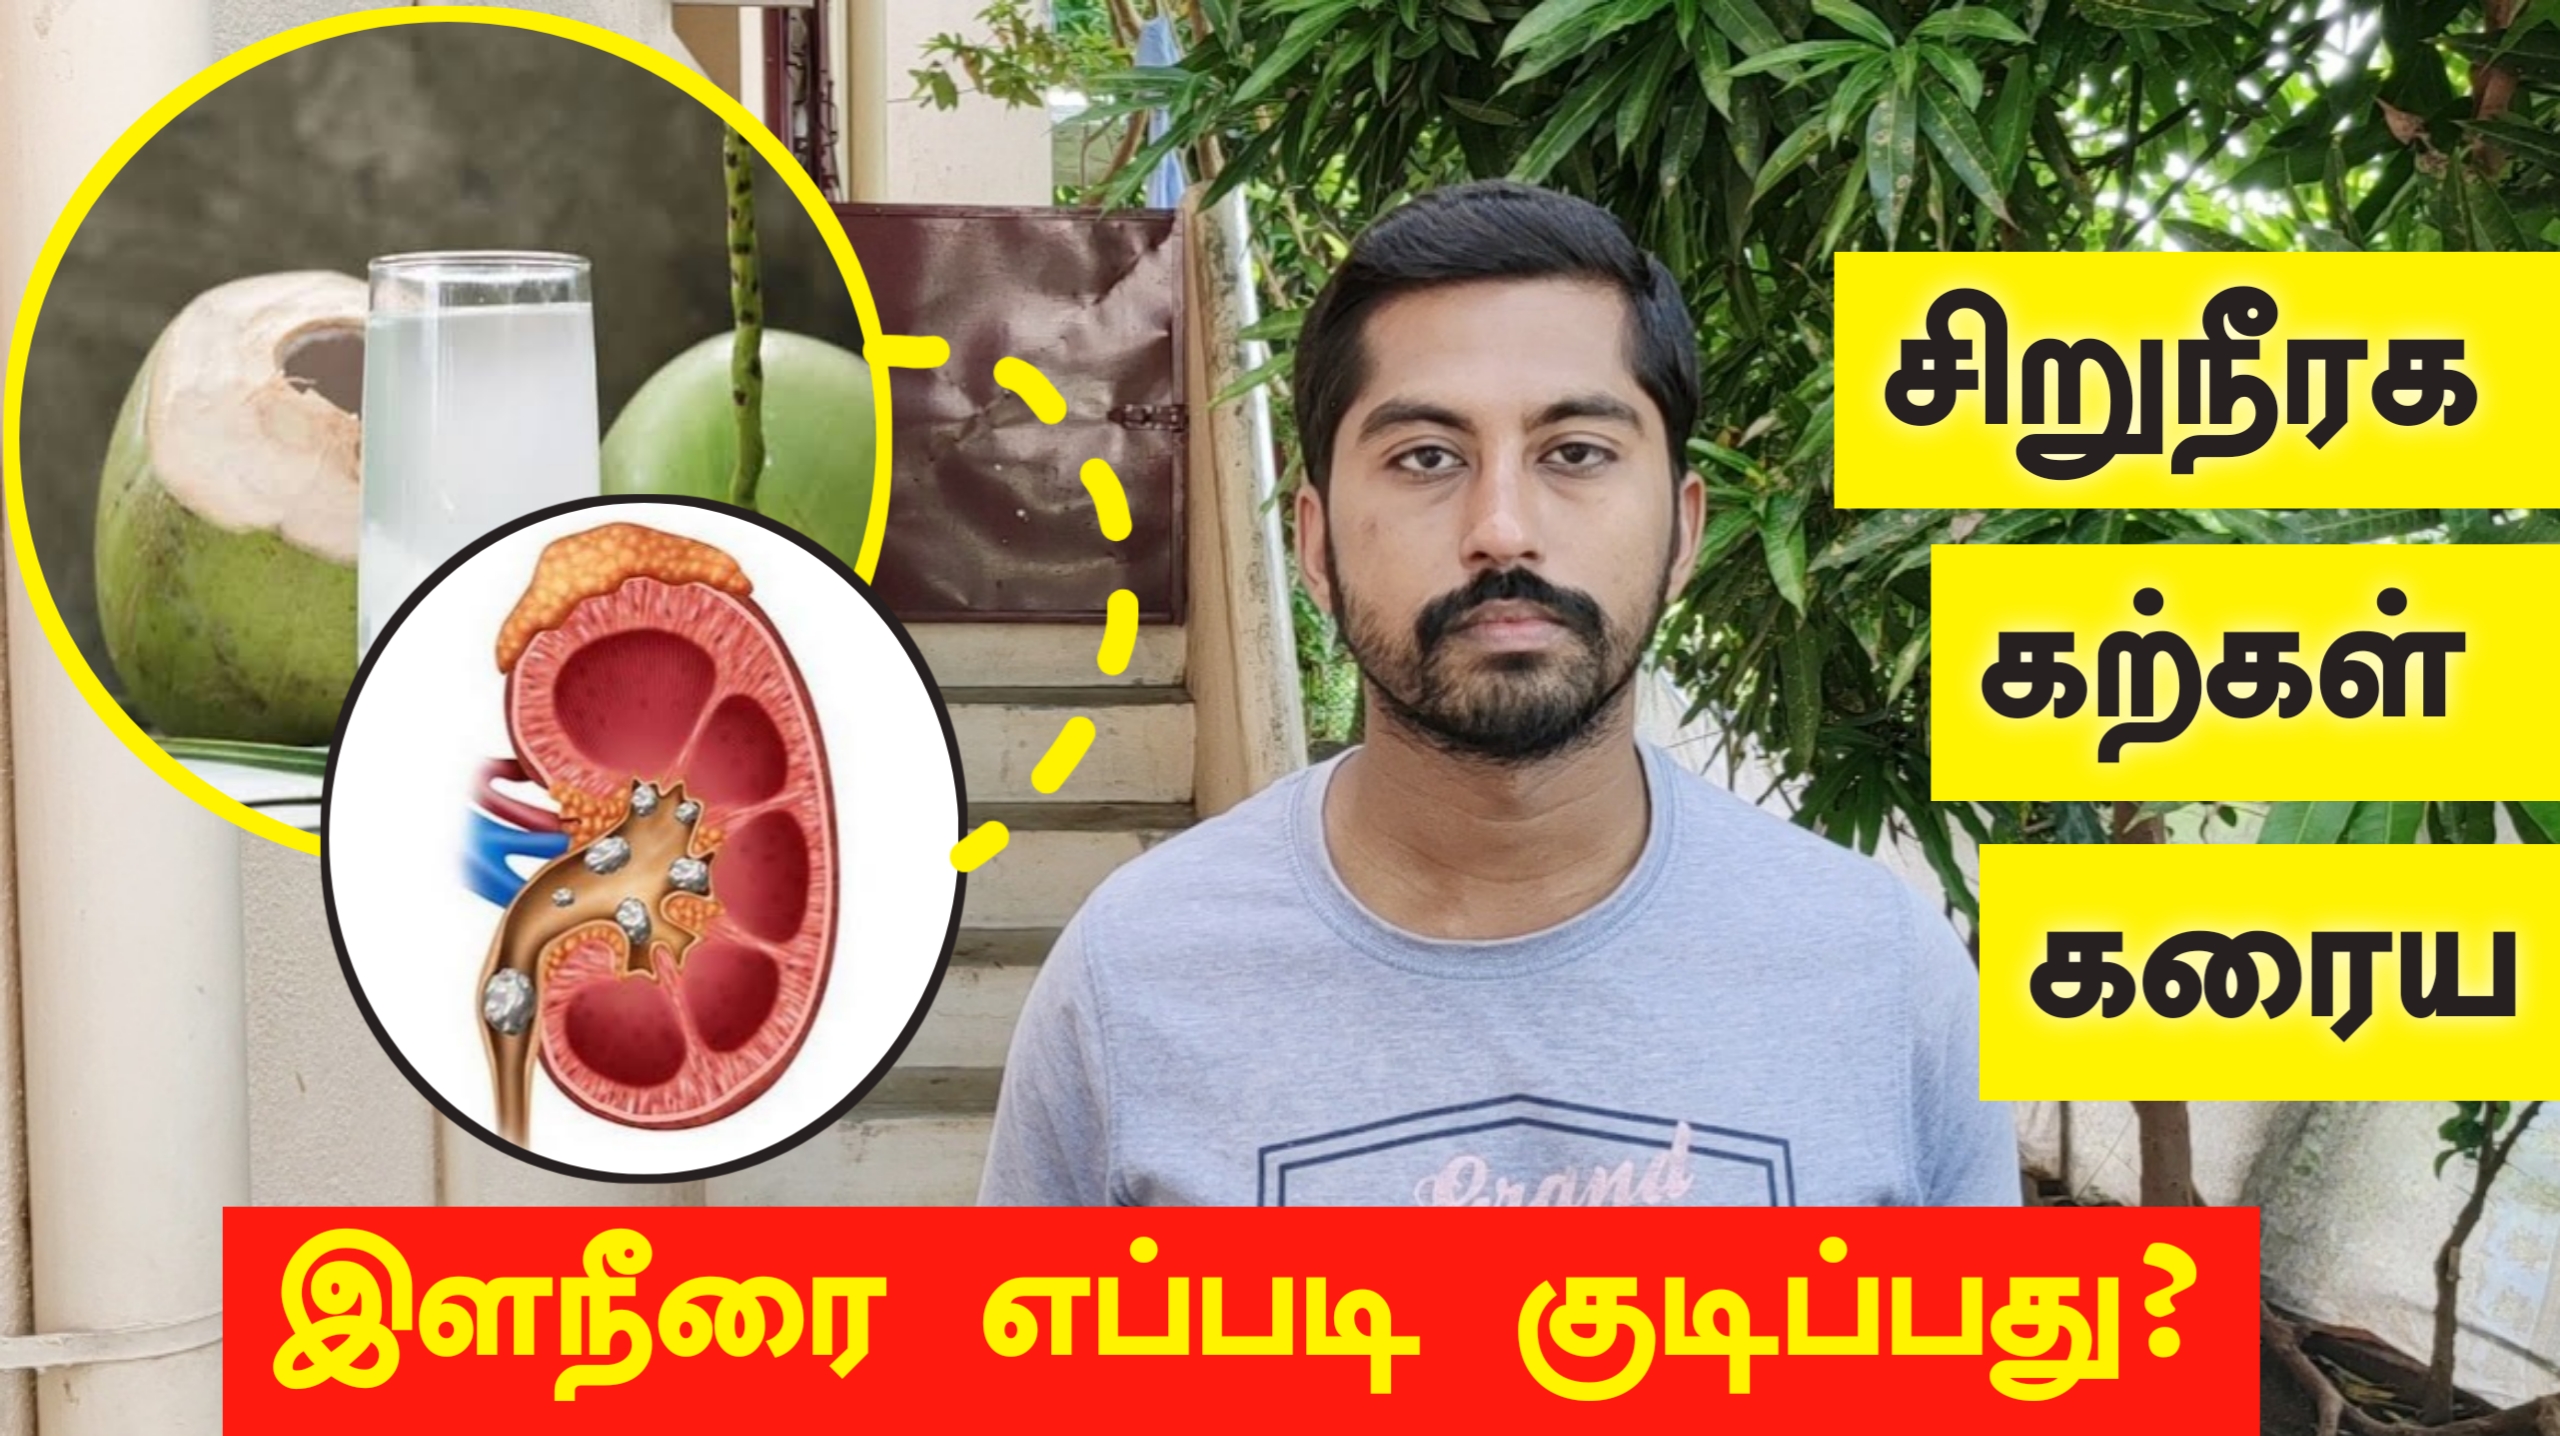 சிறுநீரக கல்லால் வலி வேதனையா? இளநீரை இனி இப்படி குடிக்கலாம் | Kidney stone removal in tamil